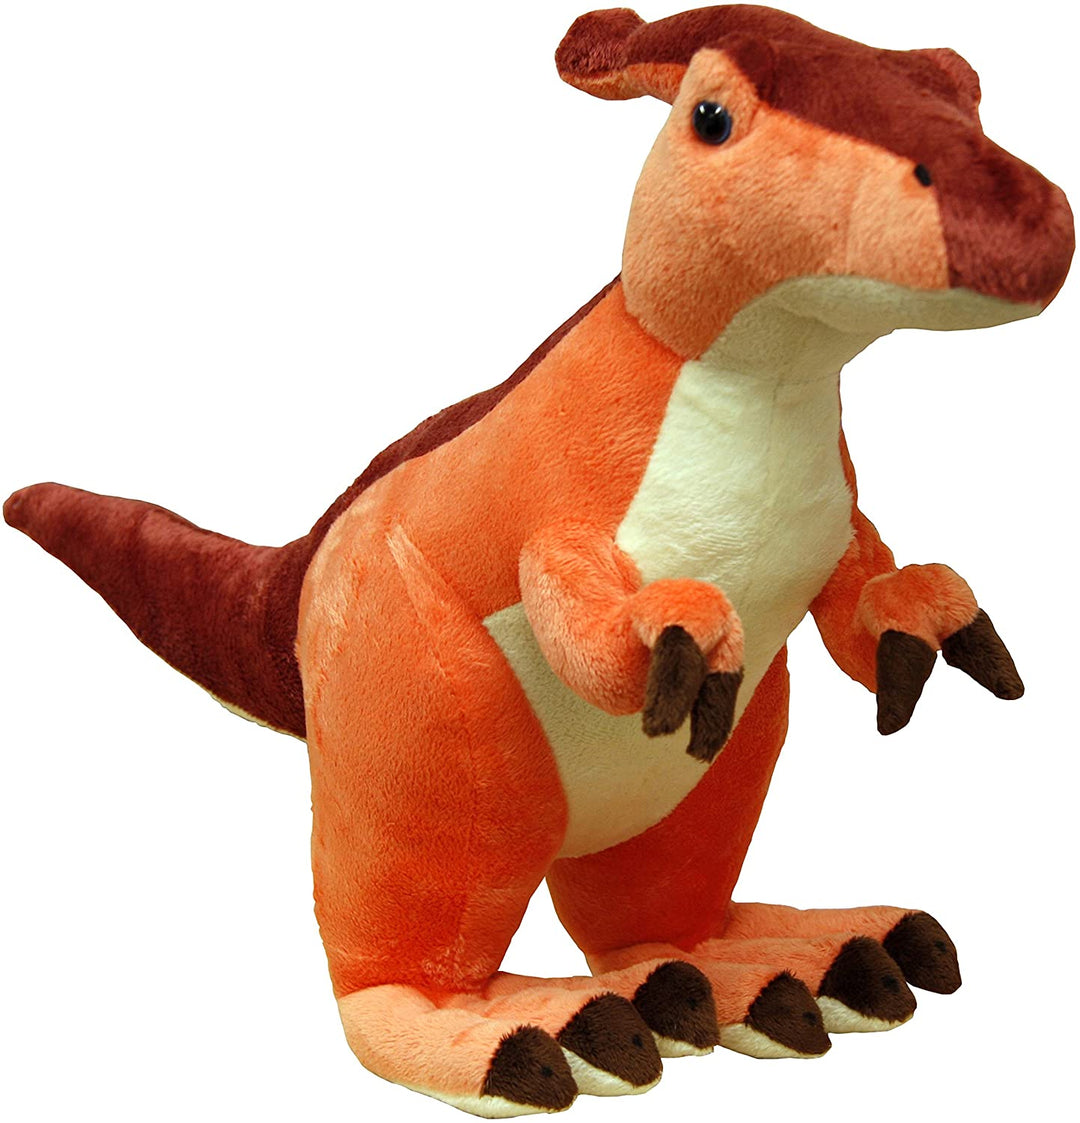 X J Toys 200001 Saurolophus Dinosaur Plush Toy, 30 cm